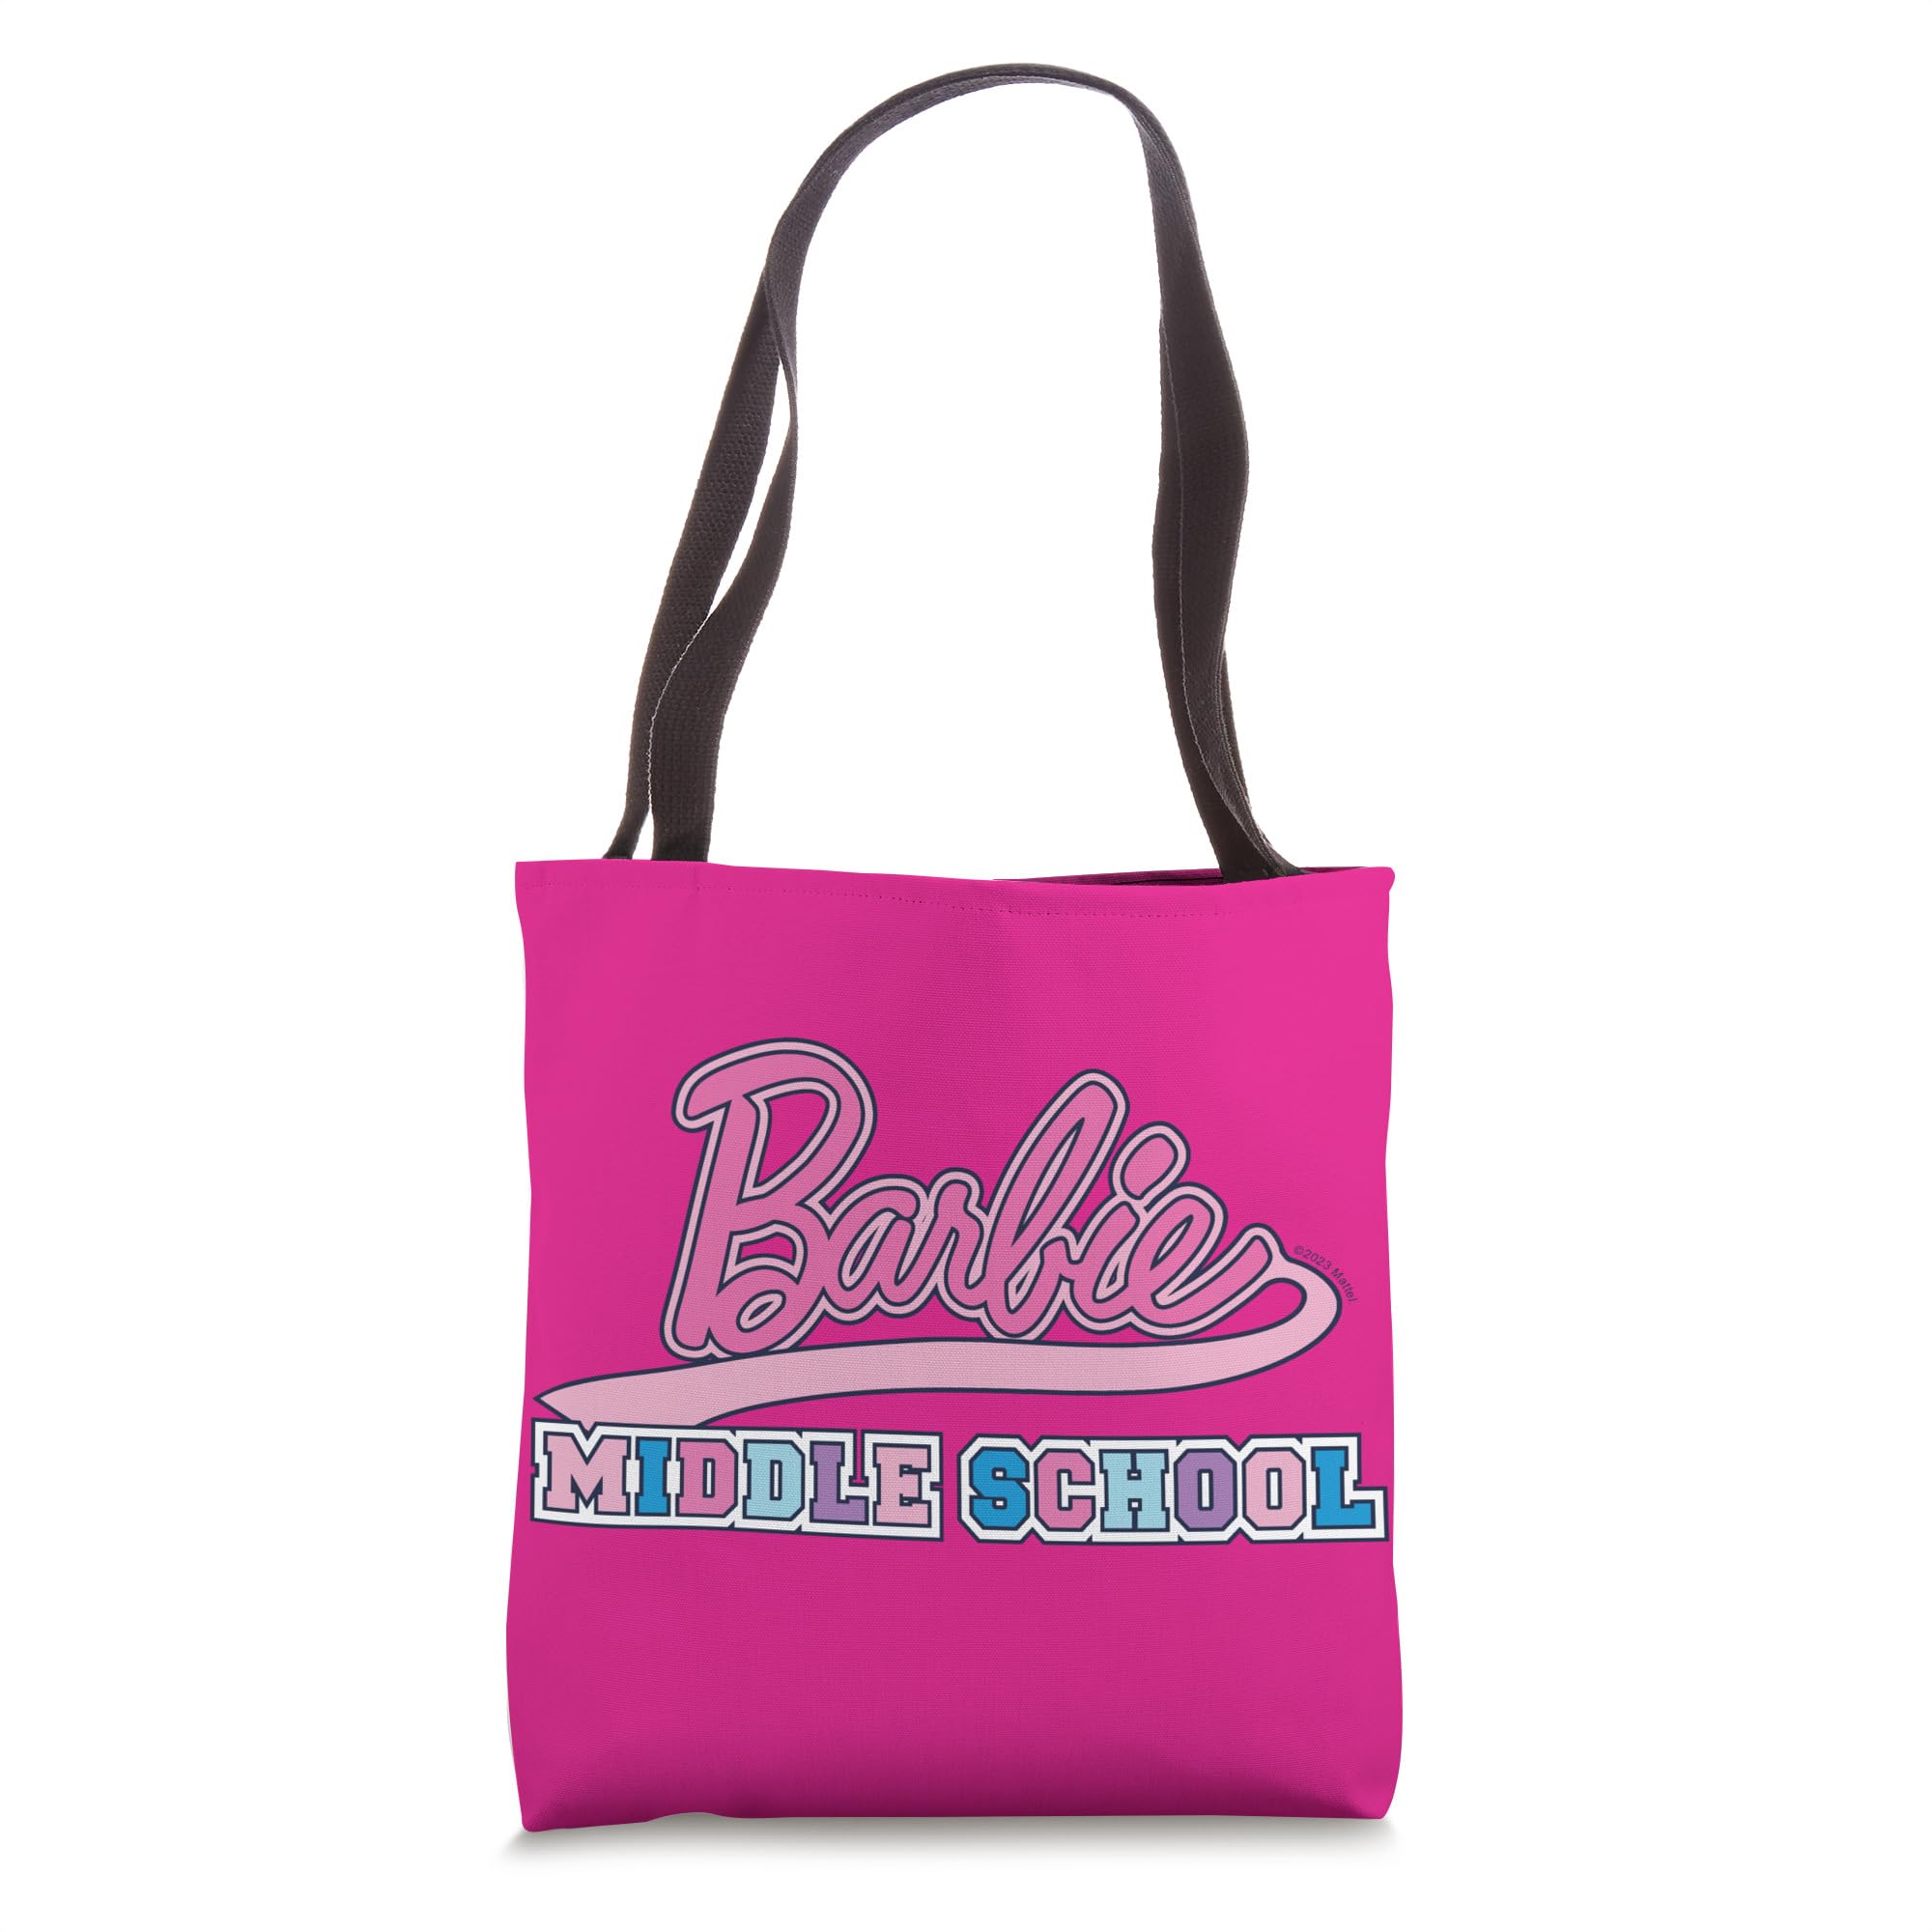 Barbie - Barbie Middle School Tote Bag